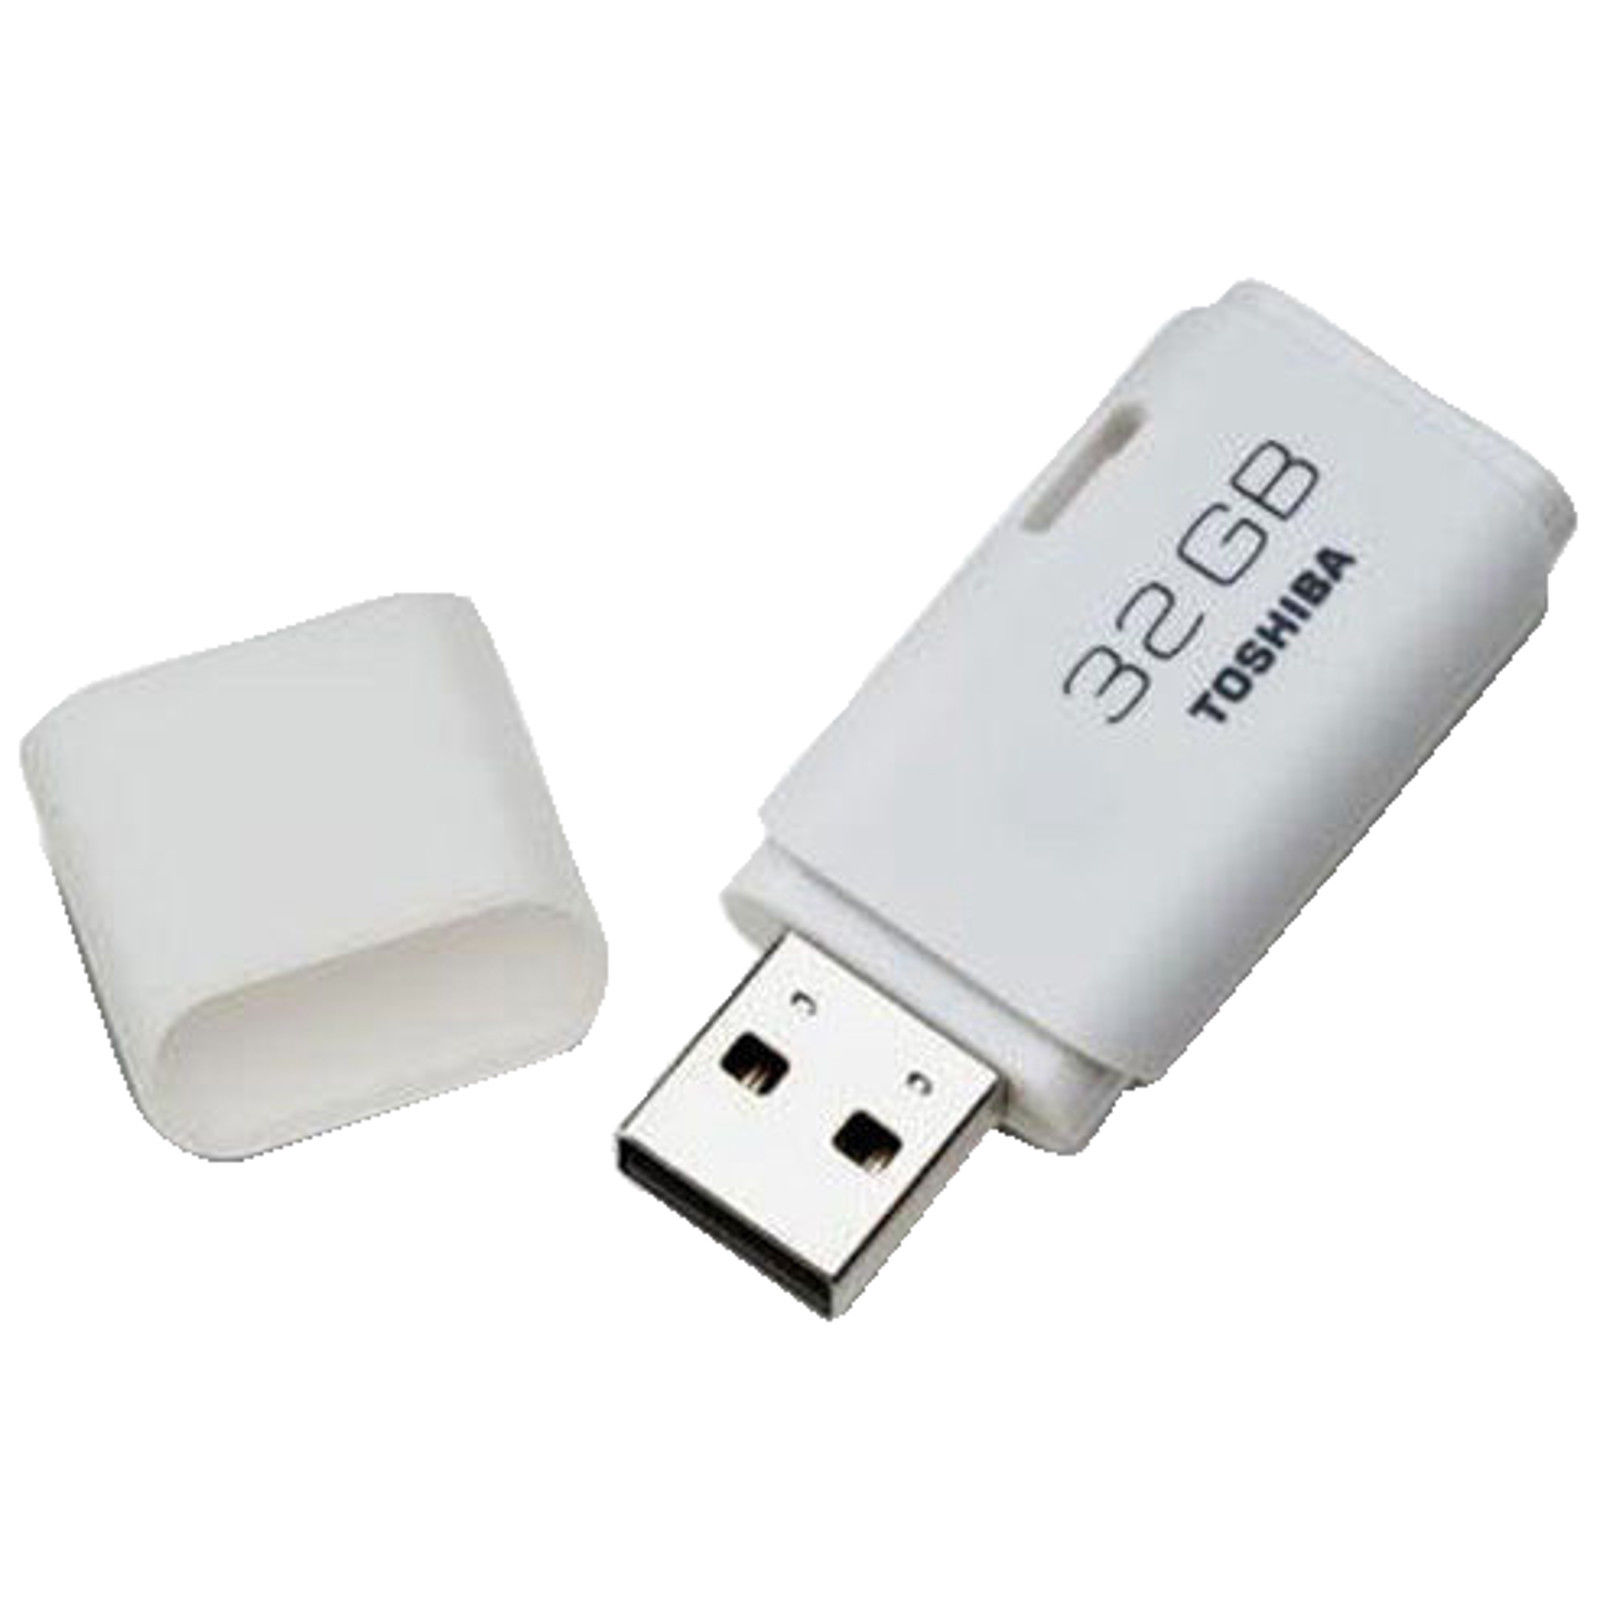 Bild zu 32 GB USB-Stick Toshiba TransMemory U202 für 7€